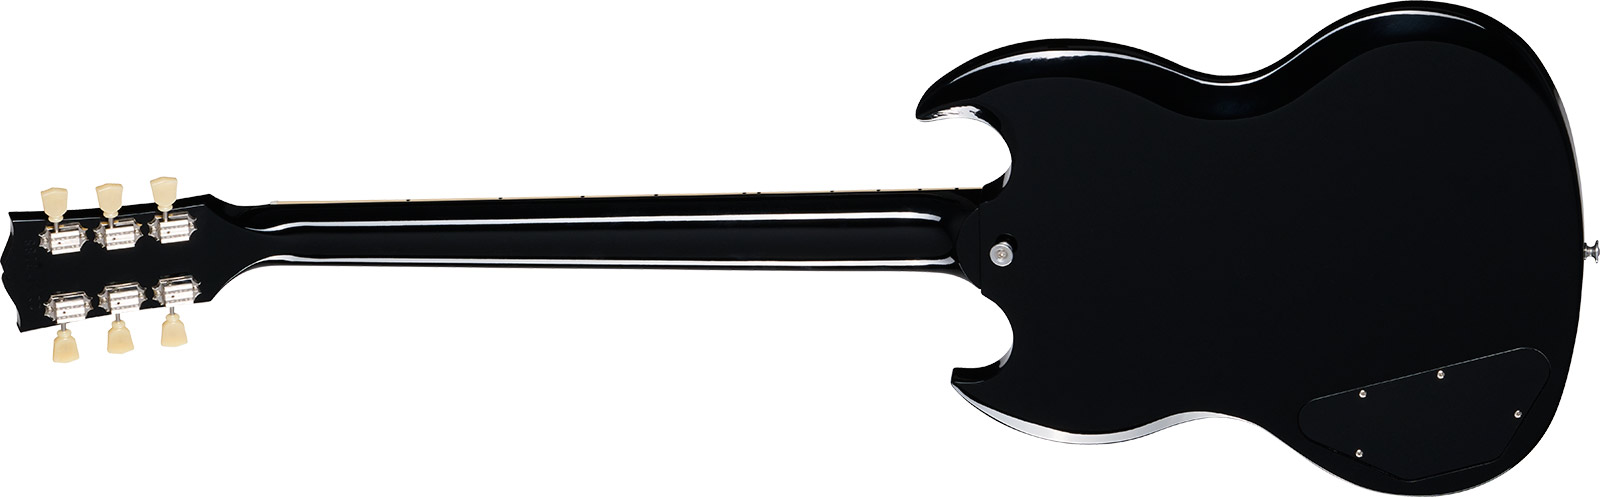 Gibson Sg Standard 1961 Custom Color 2h Ht Rw - Pelham Blue Burst - Guitarra eléctrica de doble corte - Variation 1